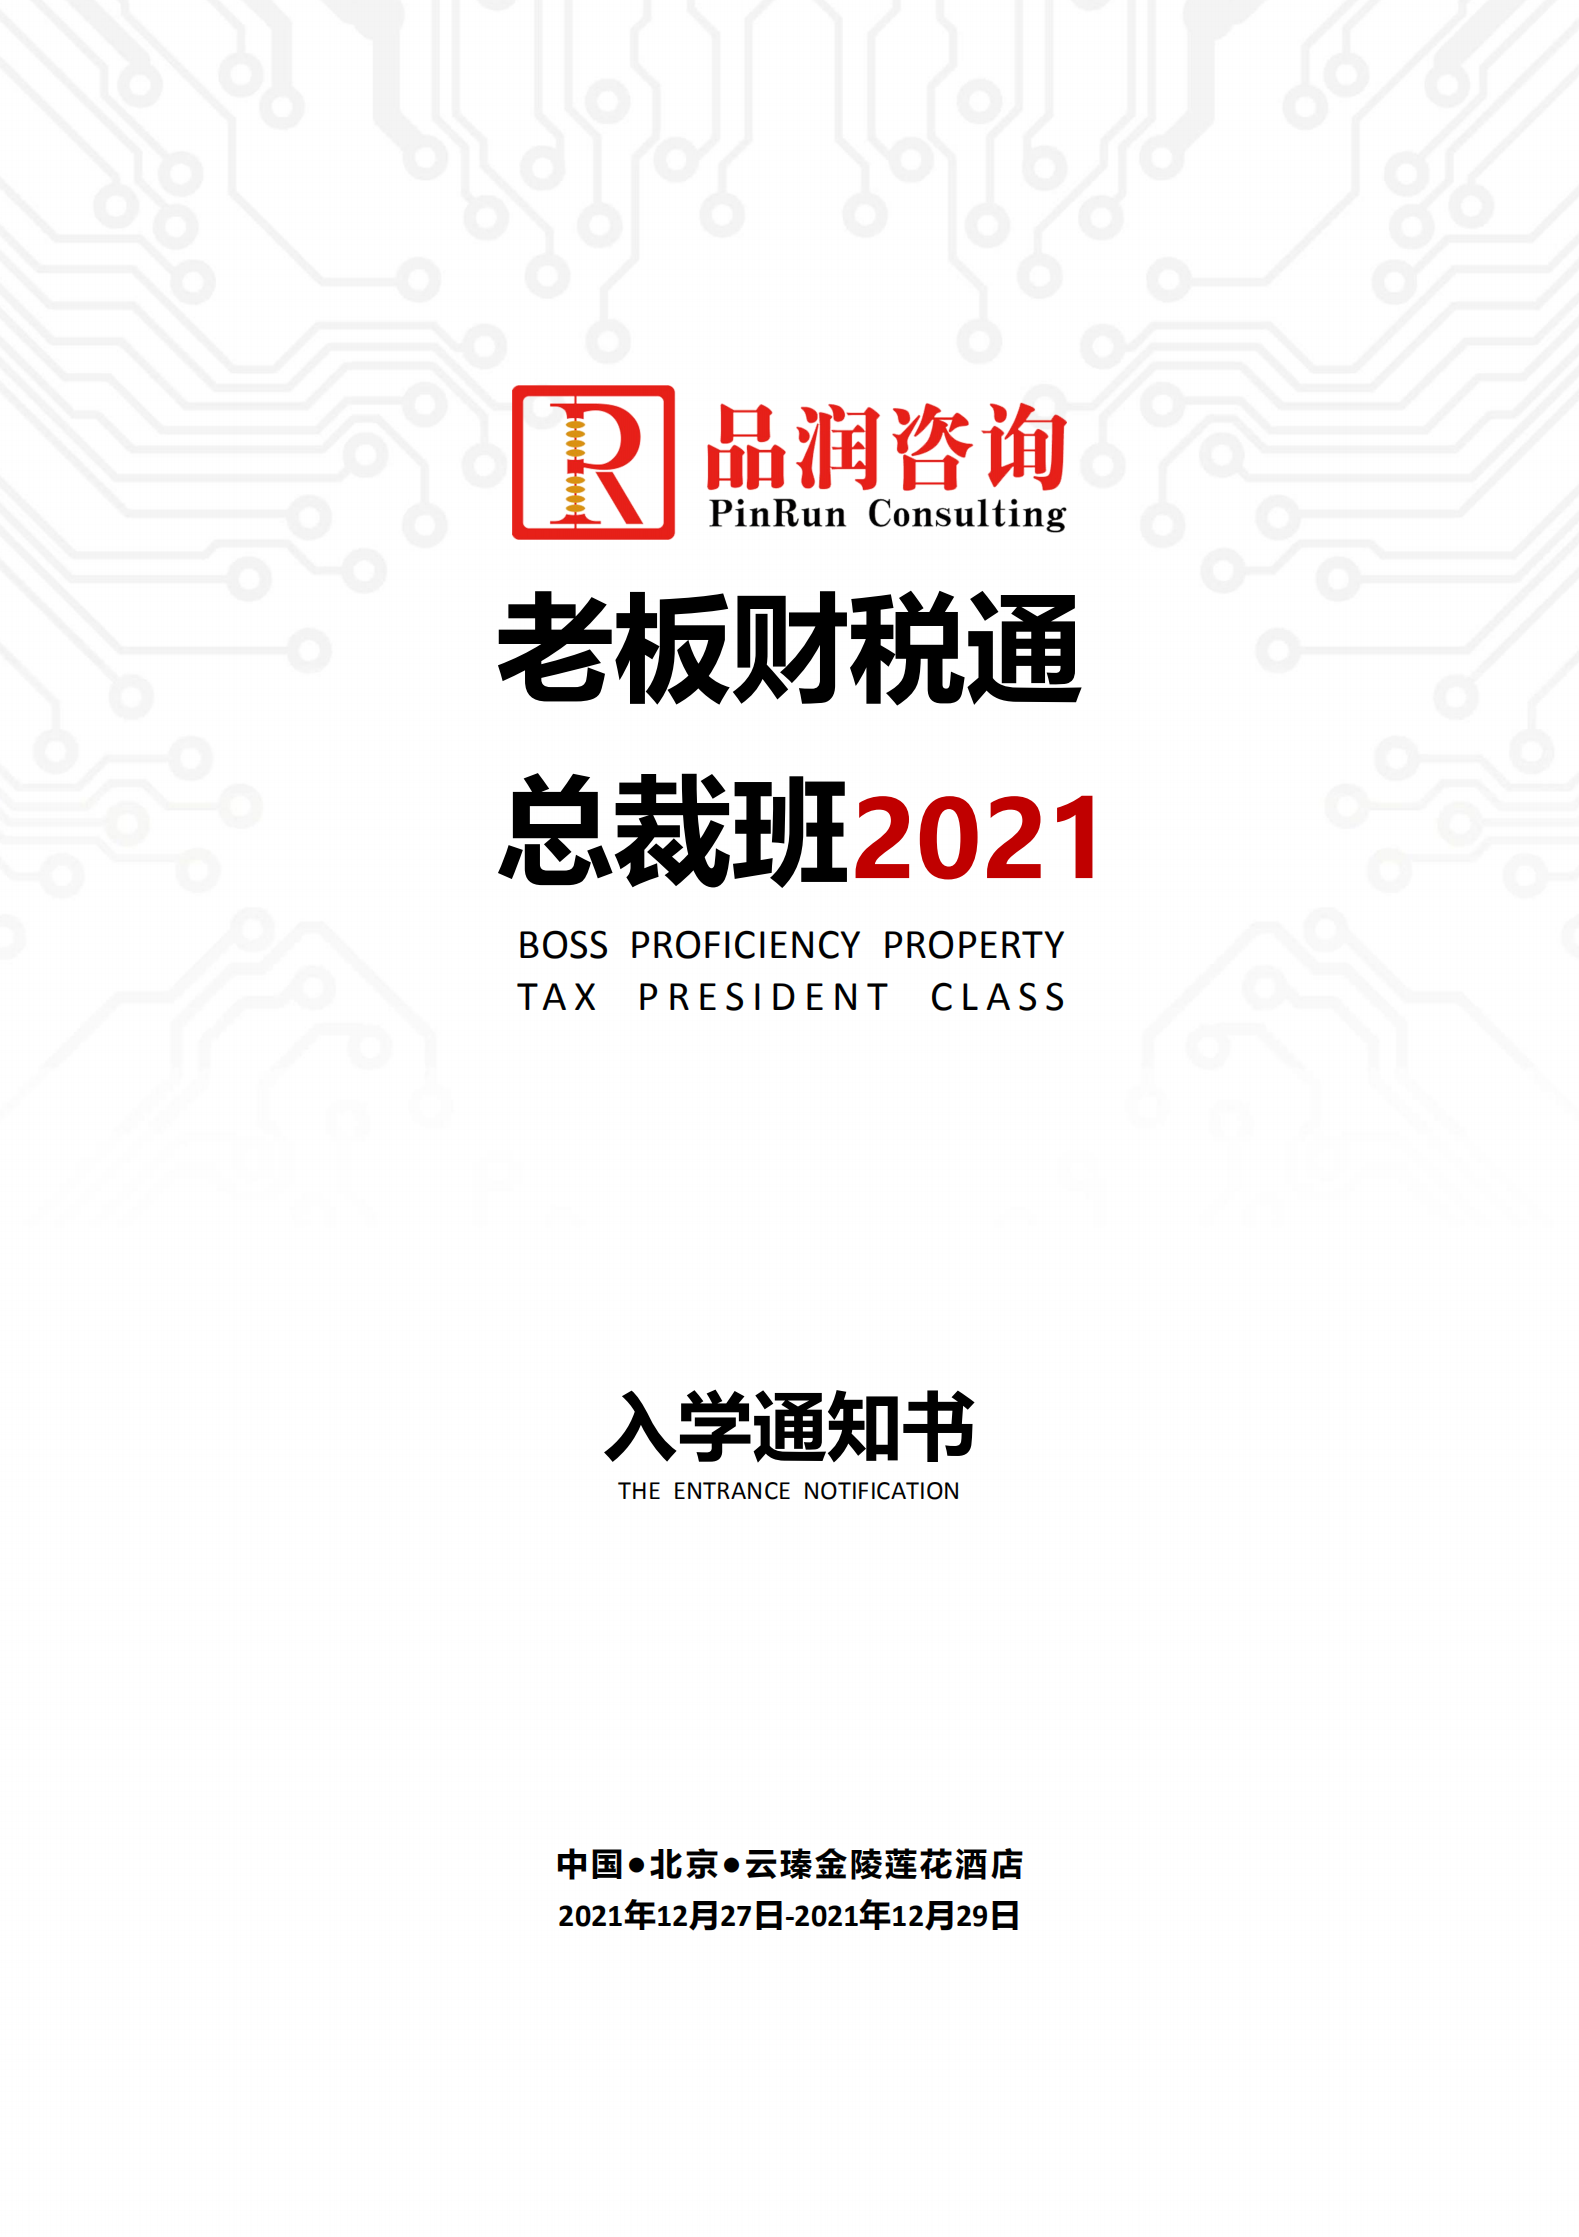 2021.12.27-29北京第145期《老板财税通》入学通知书